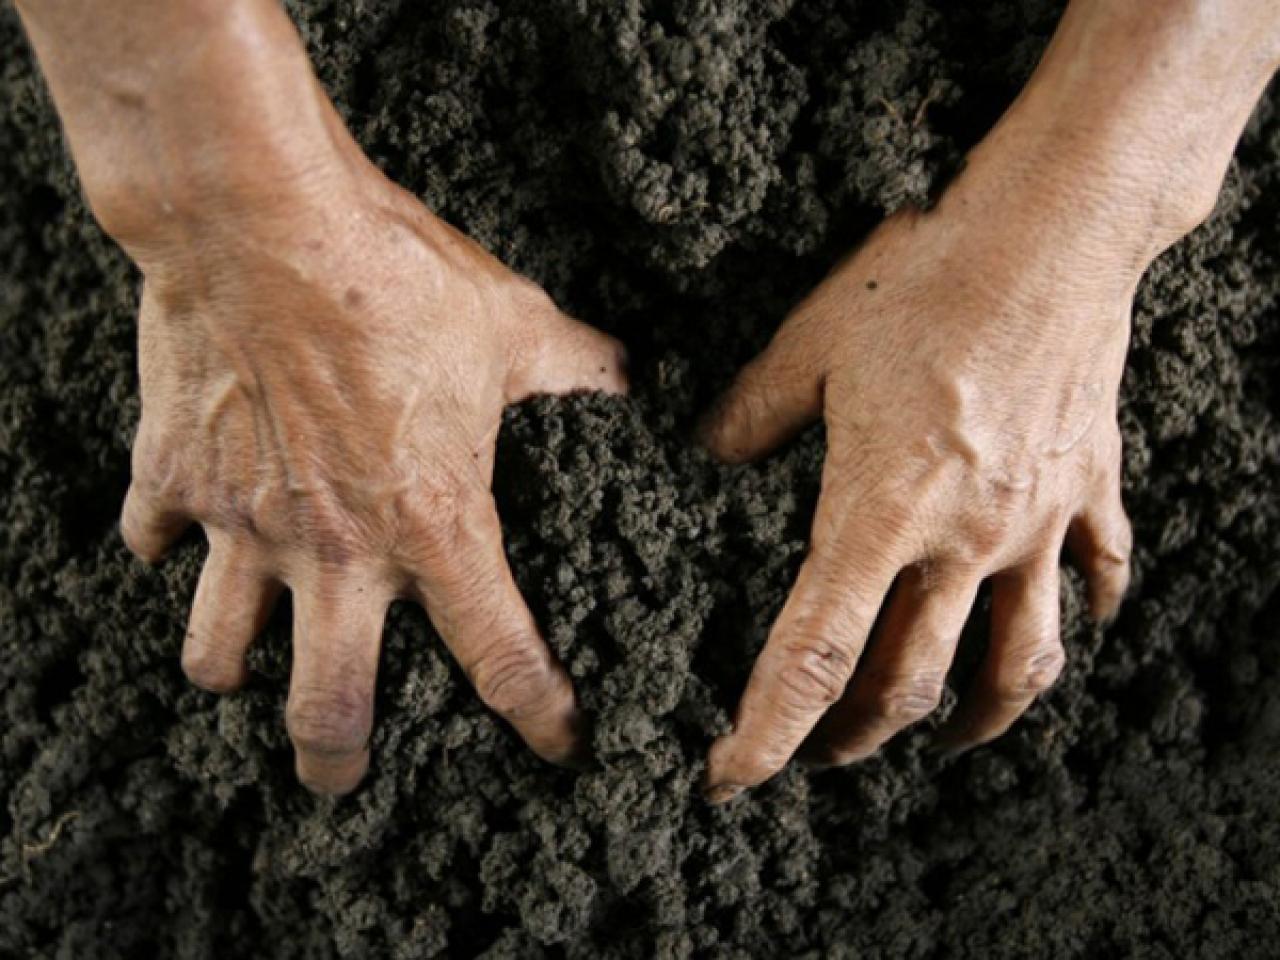 Незаконный захват земли. Самовольный захват земли. Почва в ладонях. Земля в руках. Человек роет землю руками.